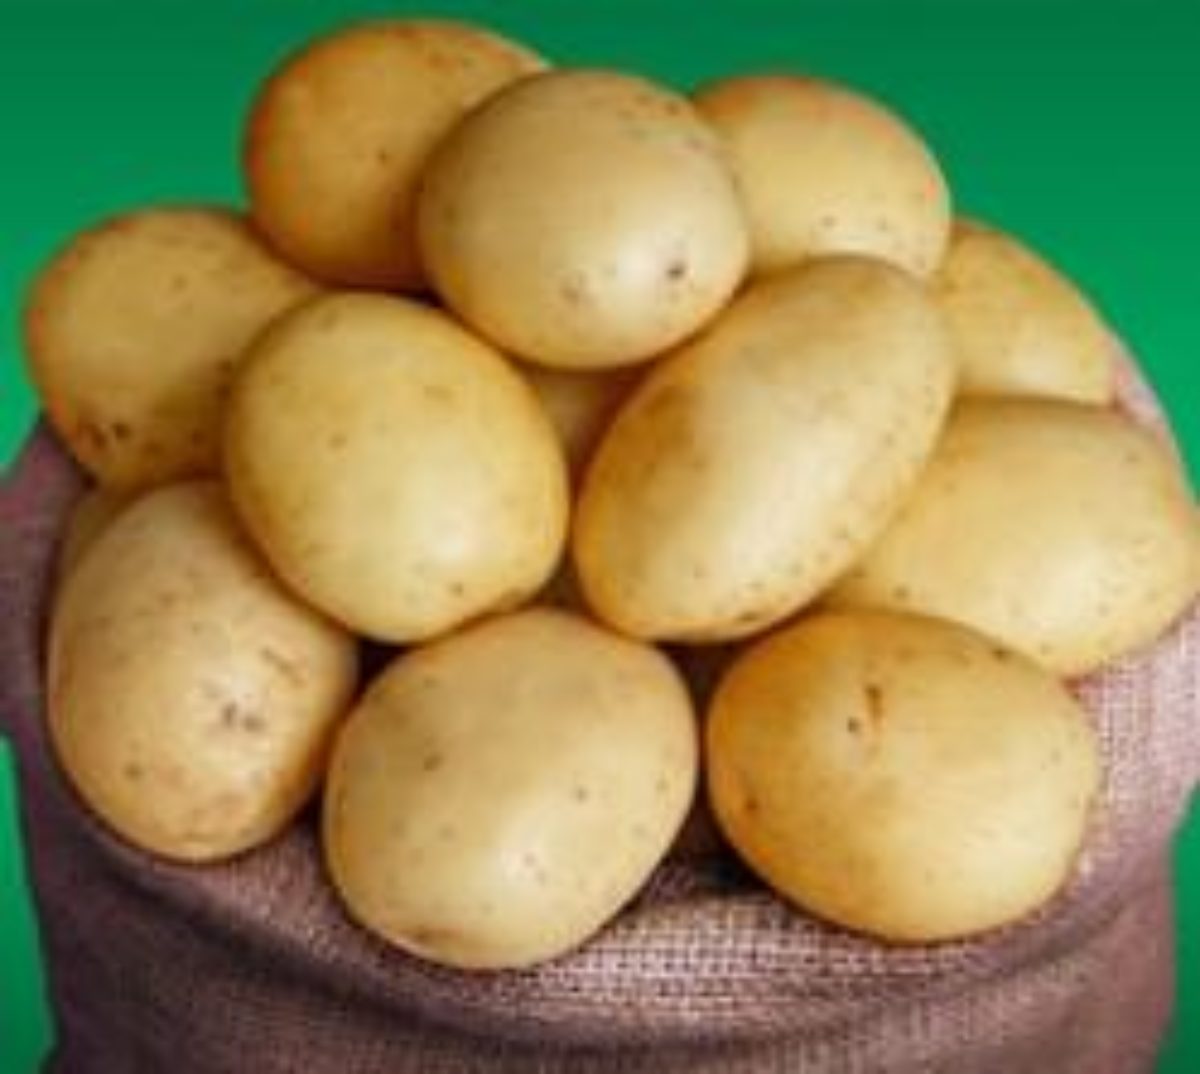 Ривьера сорт картофеля характеристика фото и описание